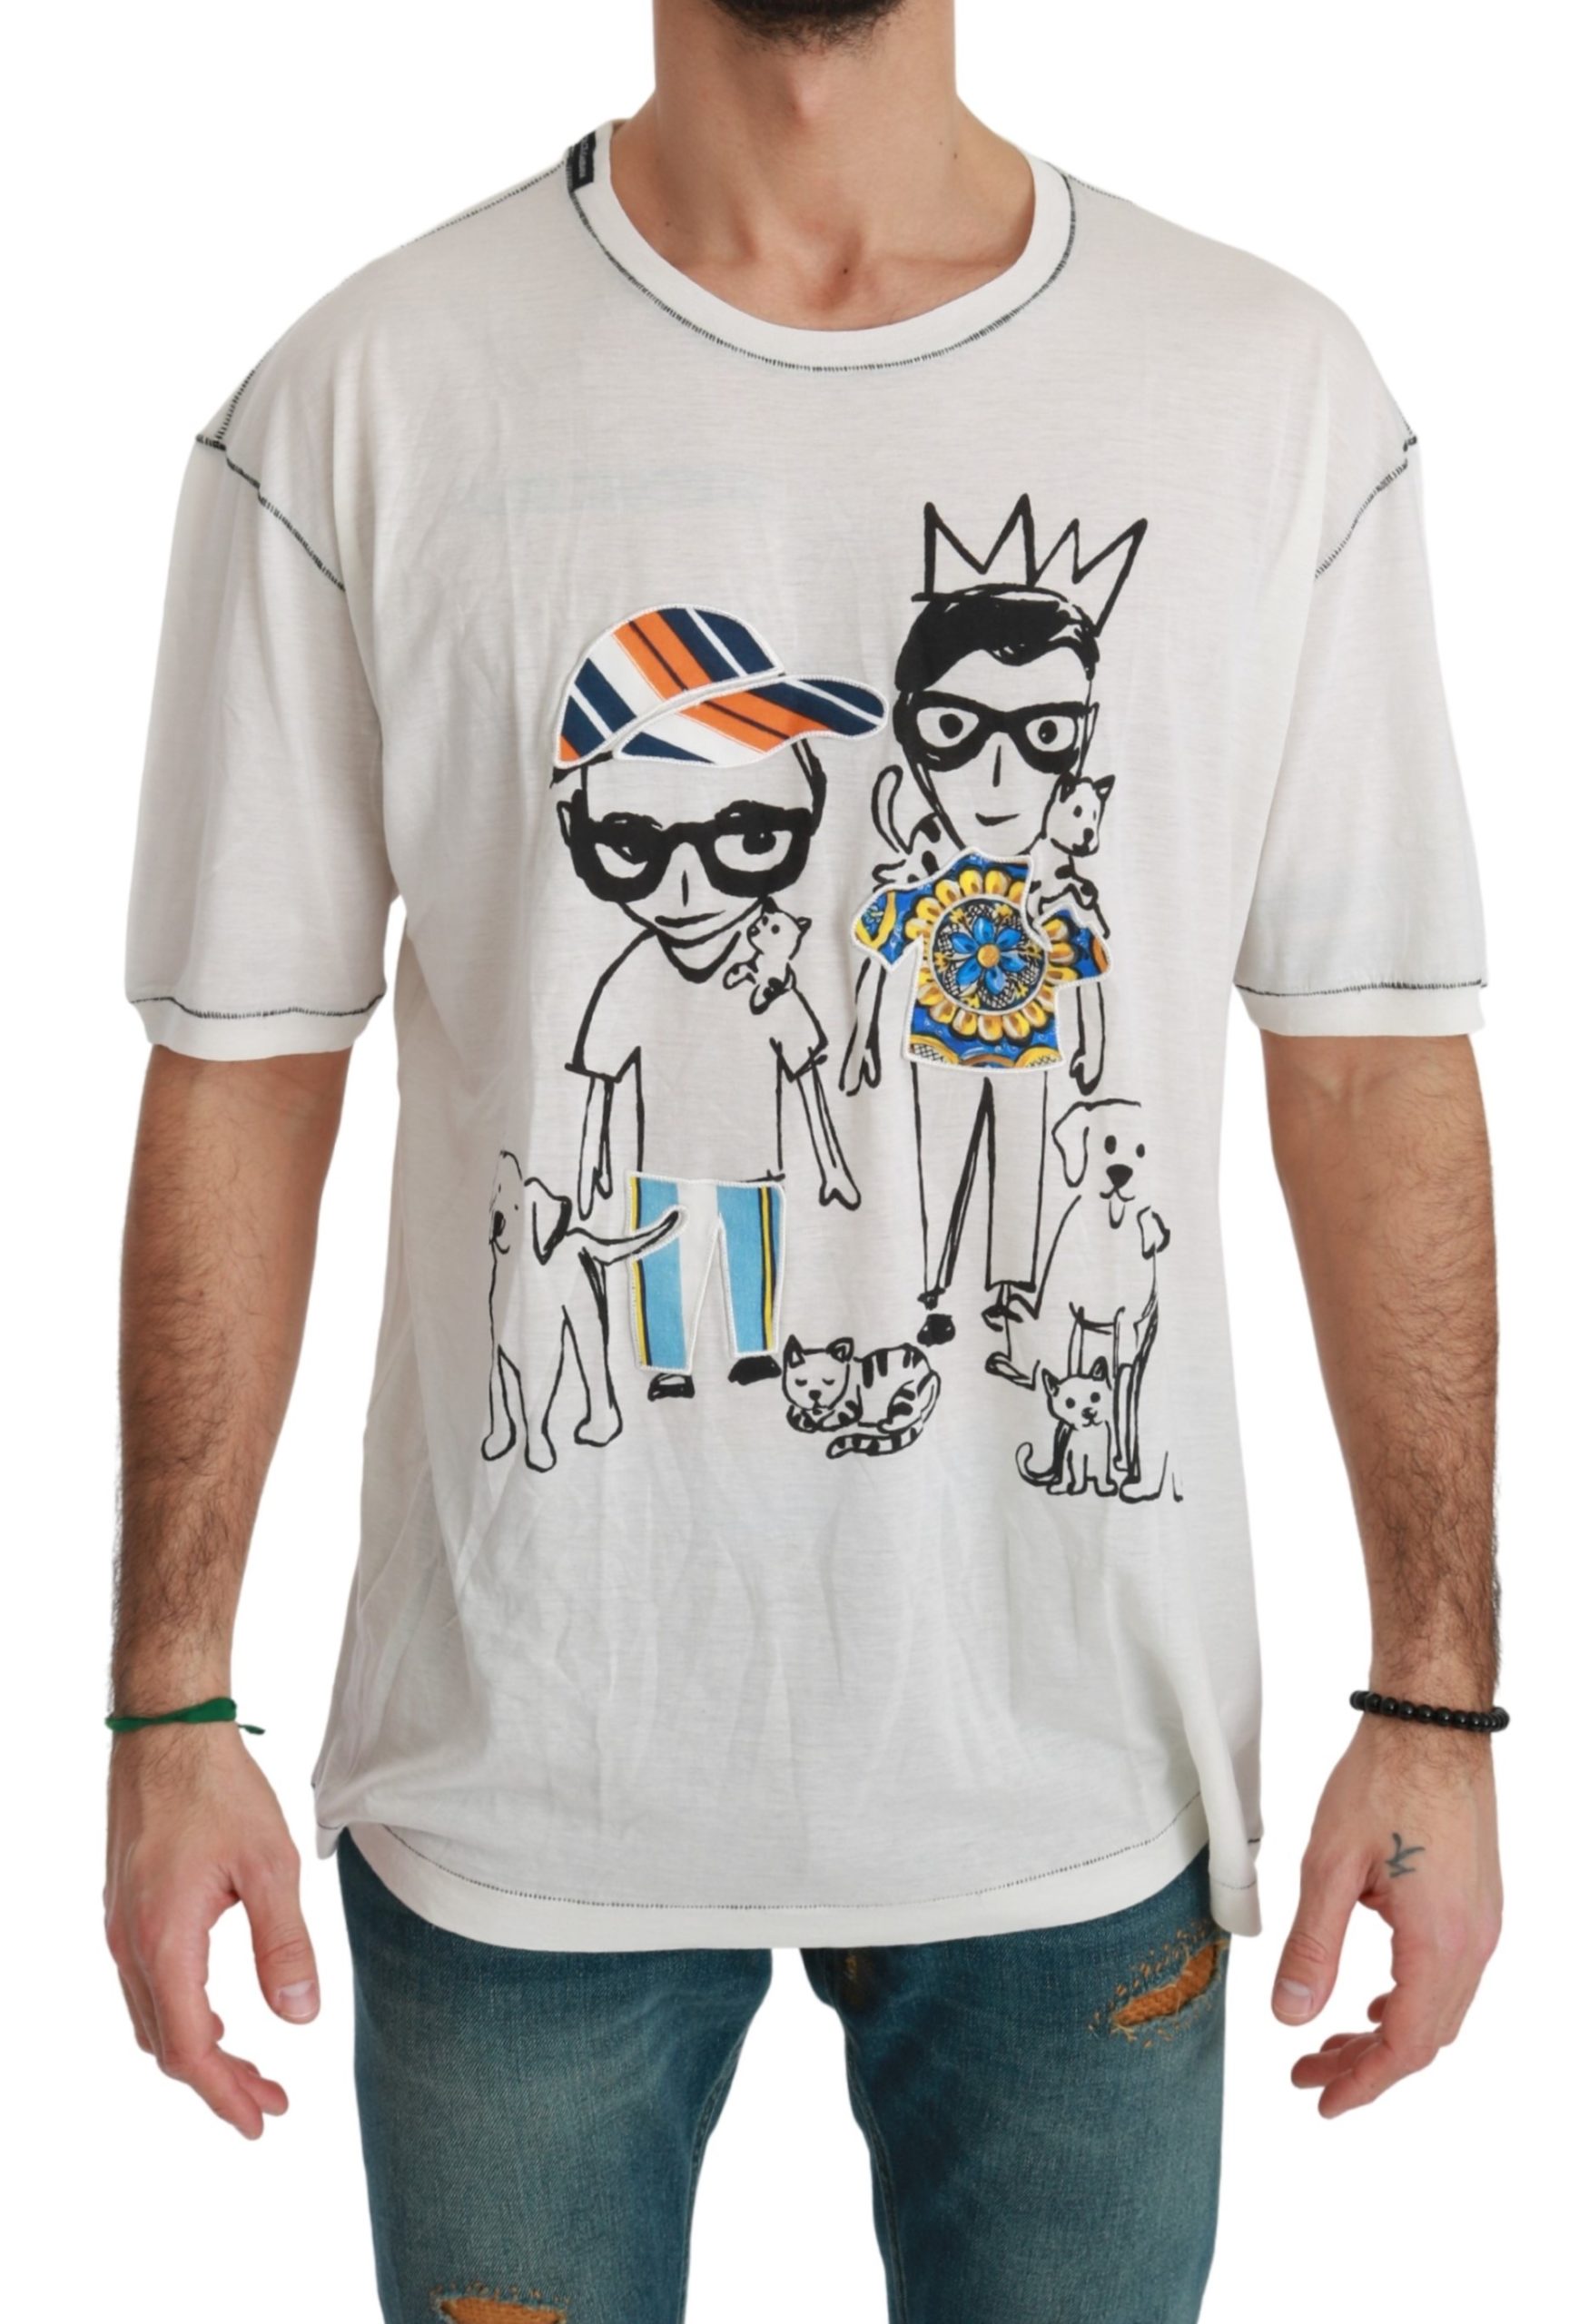 Dolce & Gabbana Men's Print Cotton T-Shirt White TSH4510 - IT50 | L